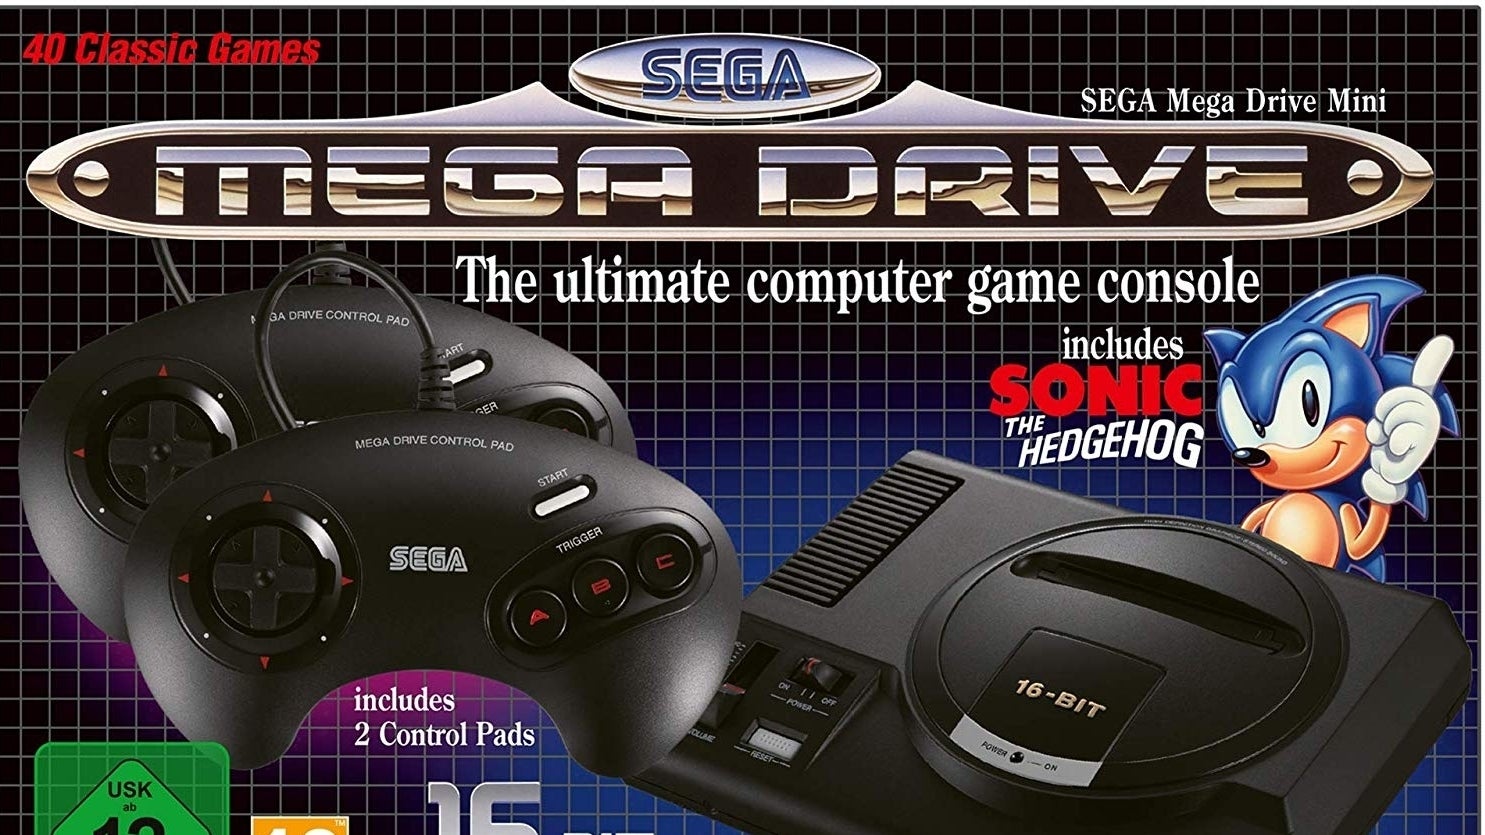 Image for Další minikonzole Sega Mega Drive Mini v září - seznam čtvrtiny her